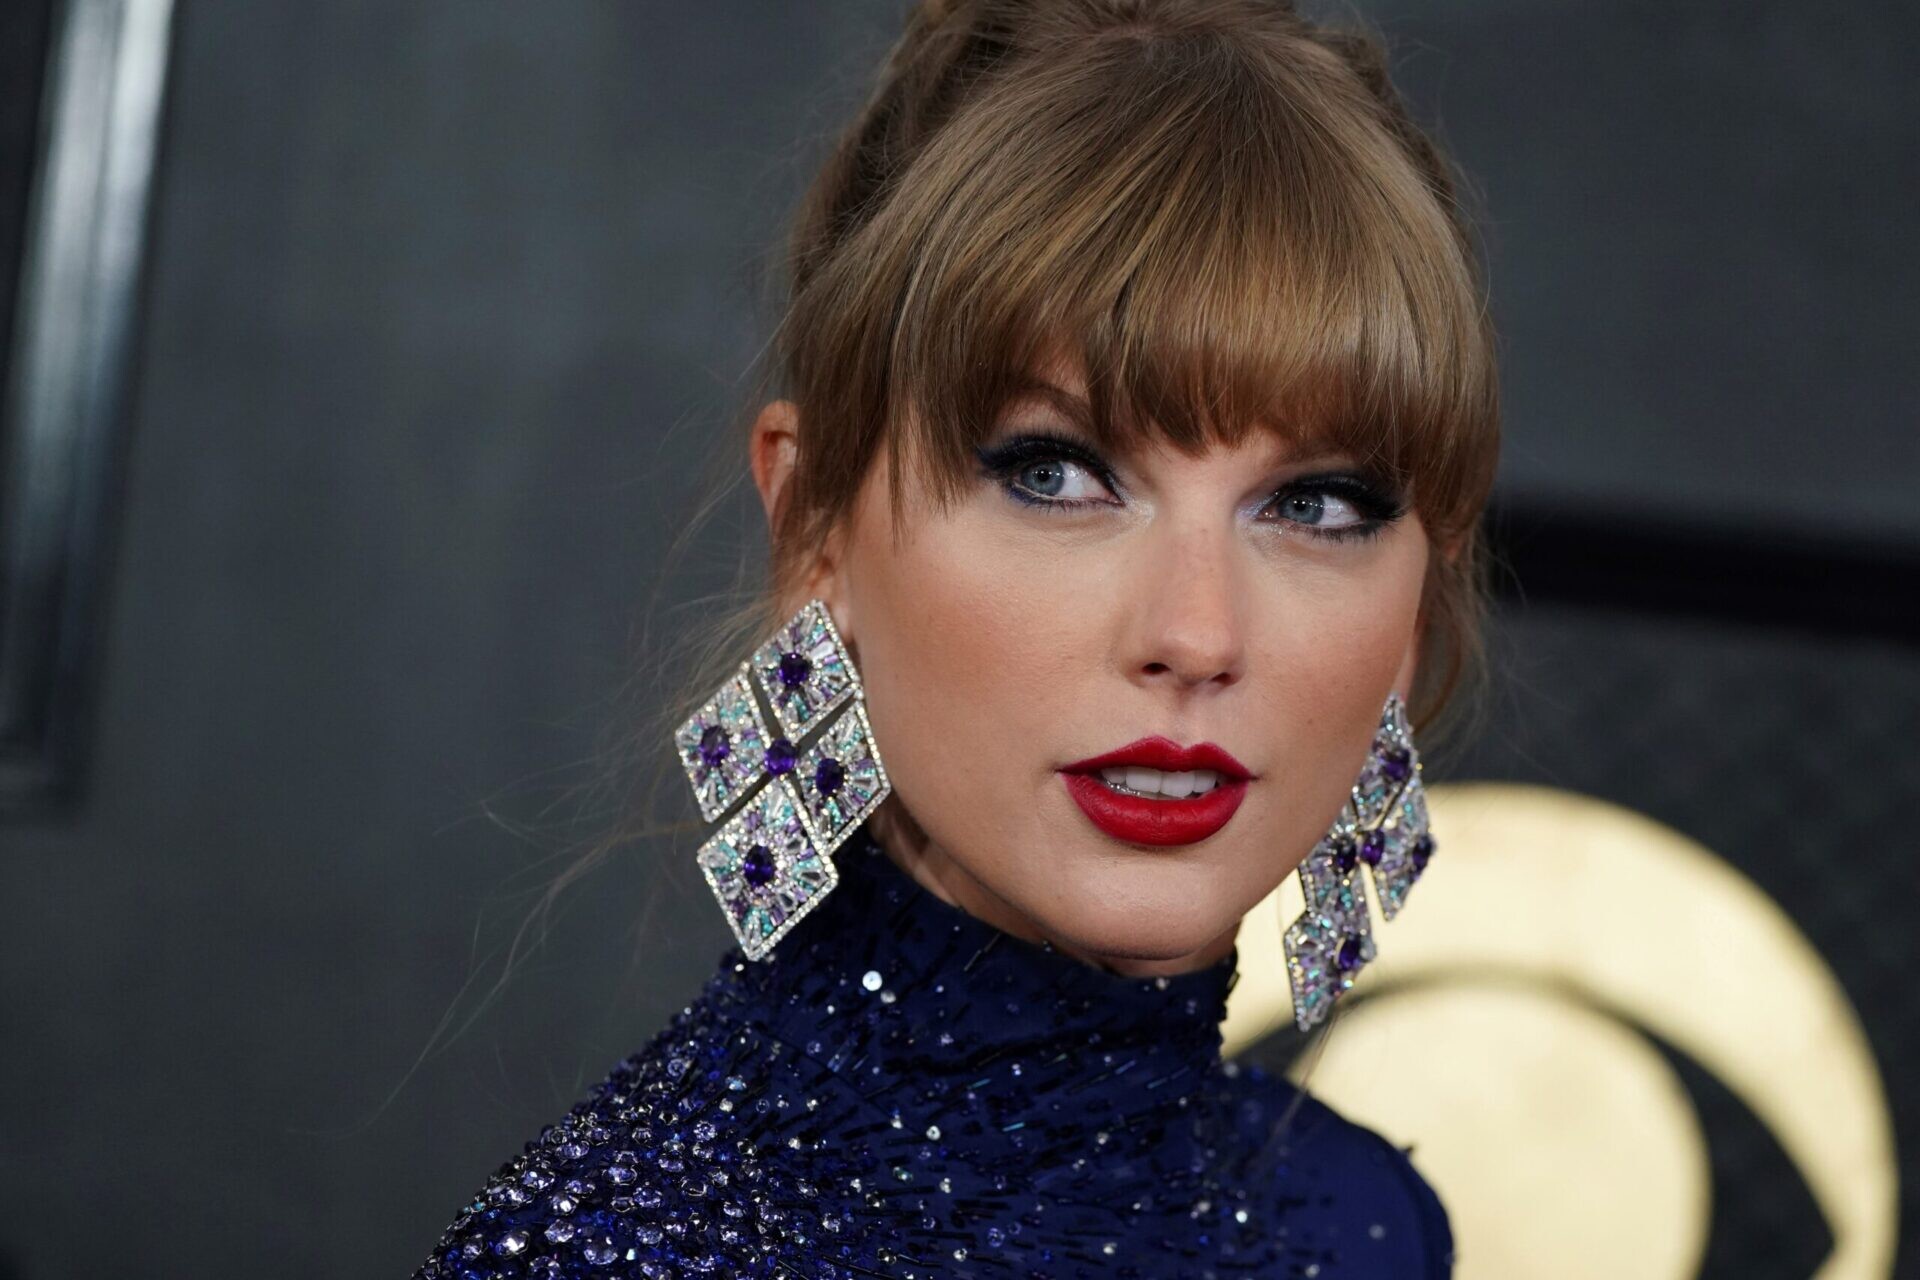 Osobnosťou roka podľa časopisu Time je Taylor Swift. Označil ju za zdroj svetla